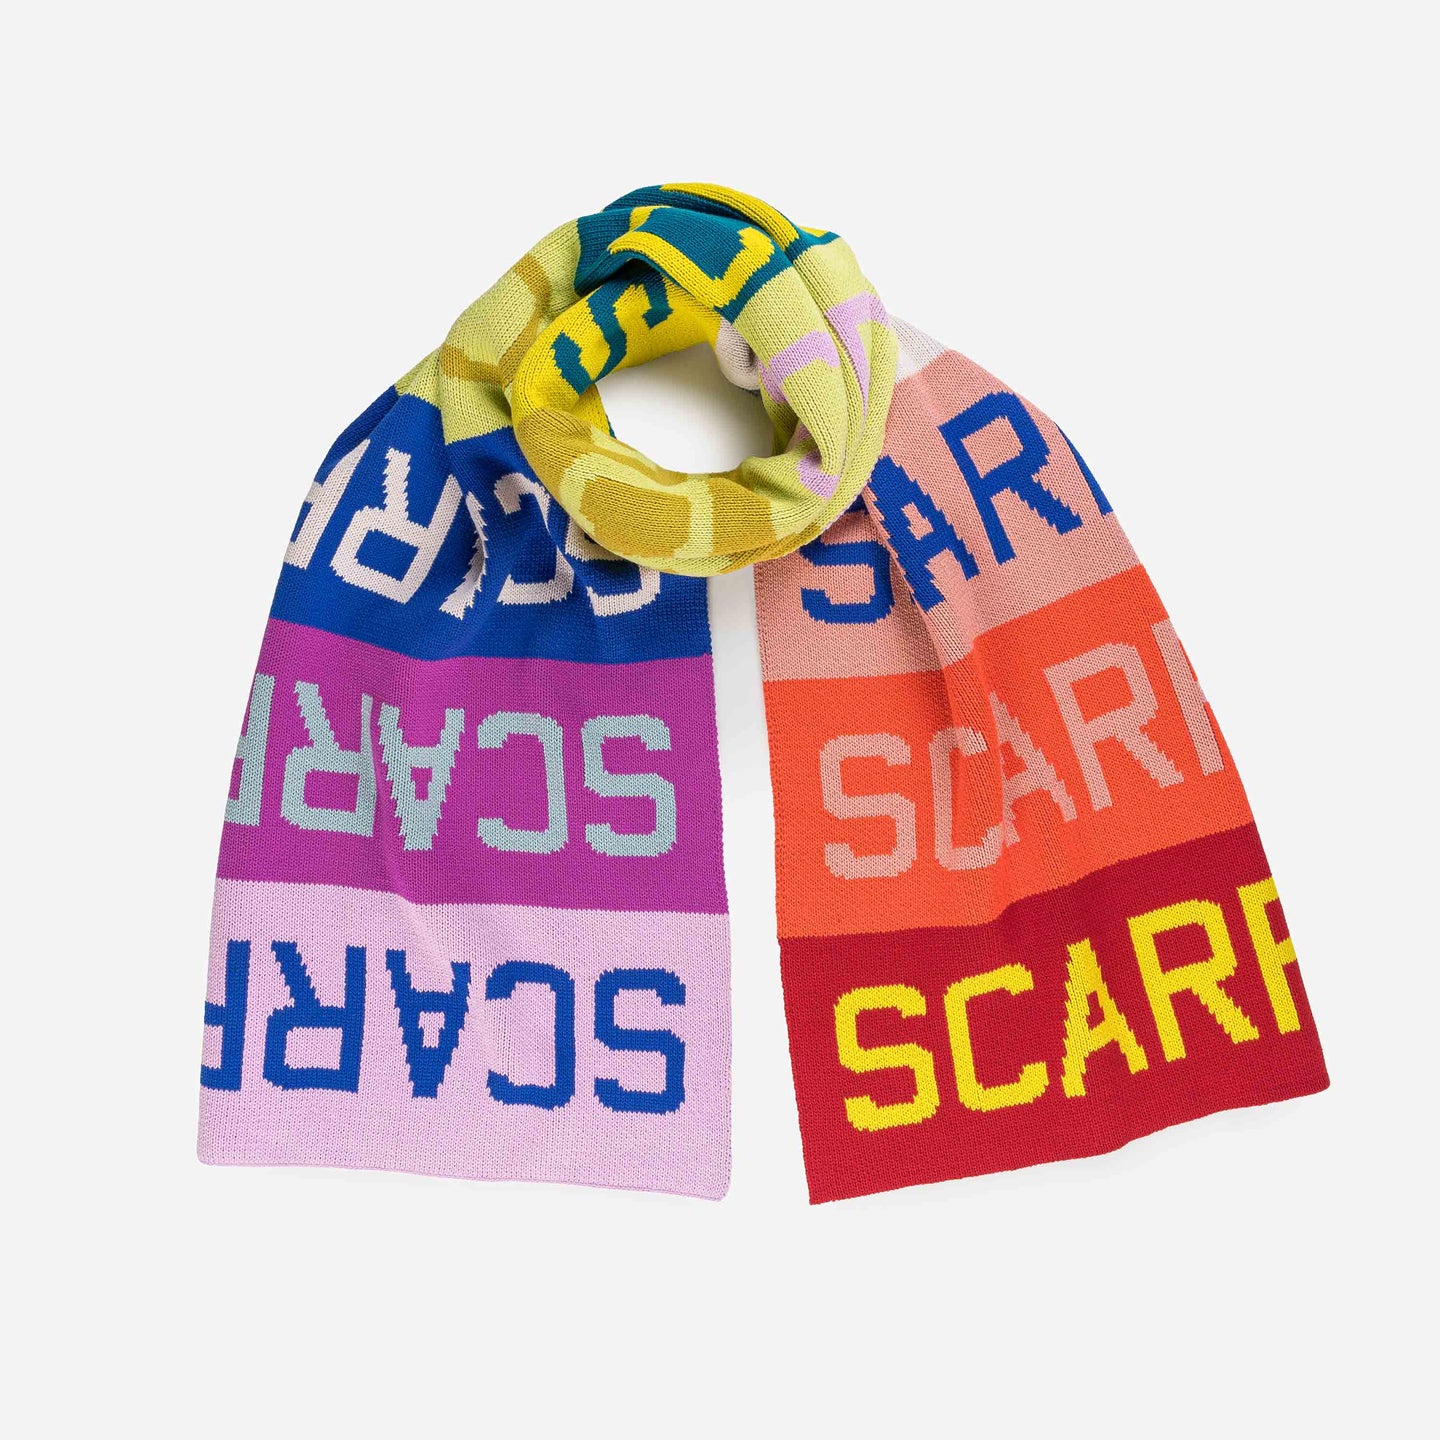 Scarf scarf scarf